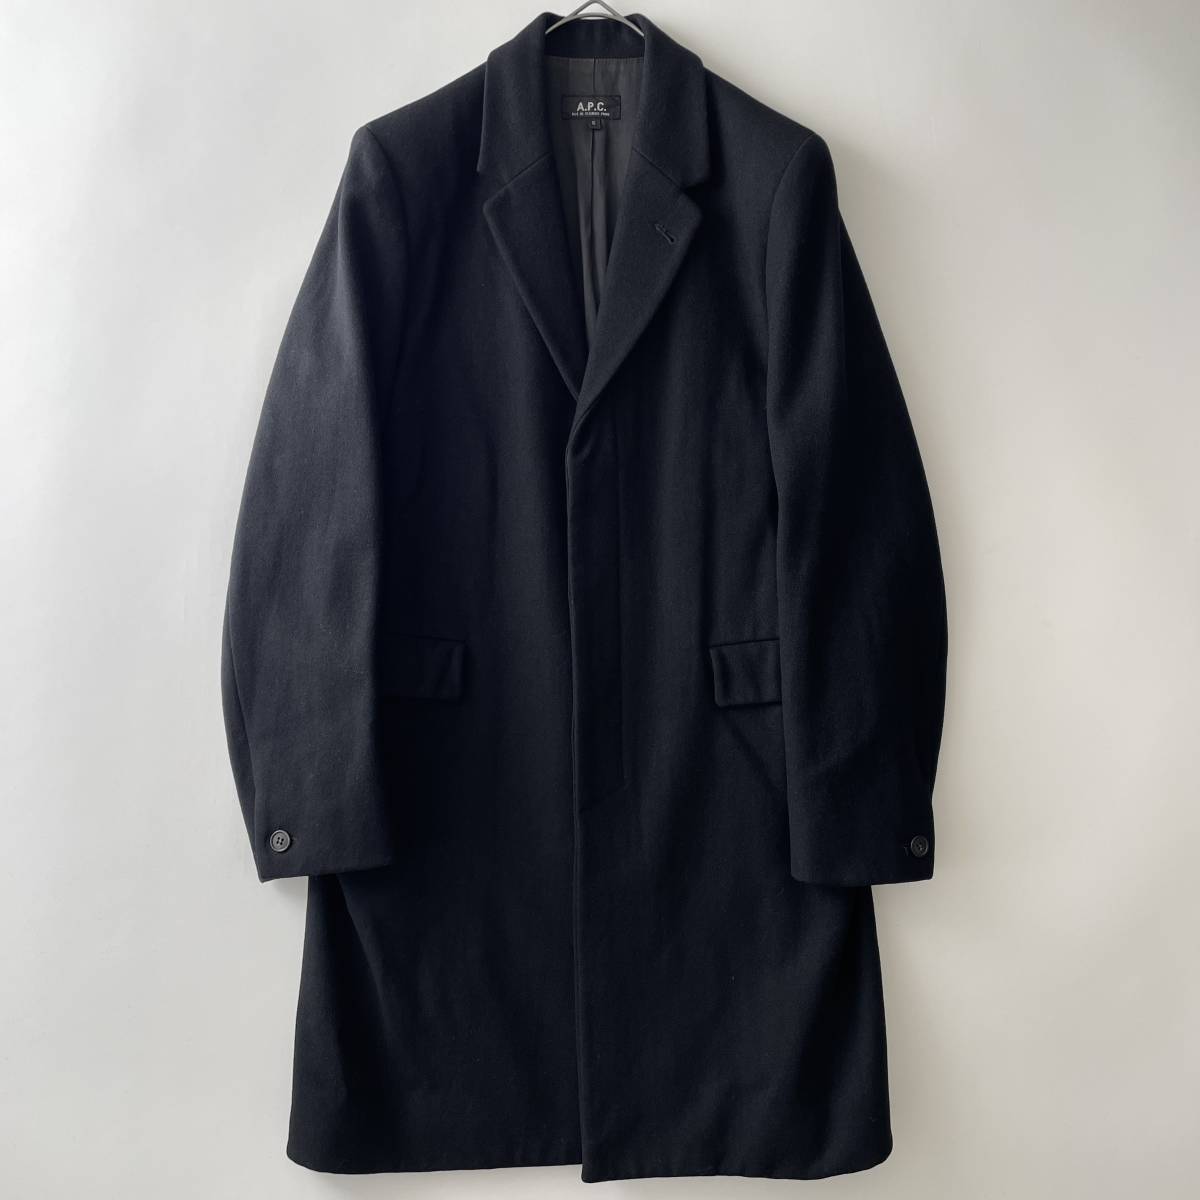 【初期/90s】A.P.C. size/S (pz) フランス製 アーペーセー メルトン ウール チェスターコート アウター ブラック 黒 FRANCE coat_画像1